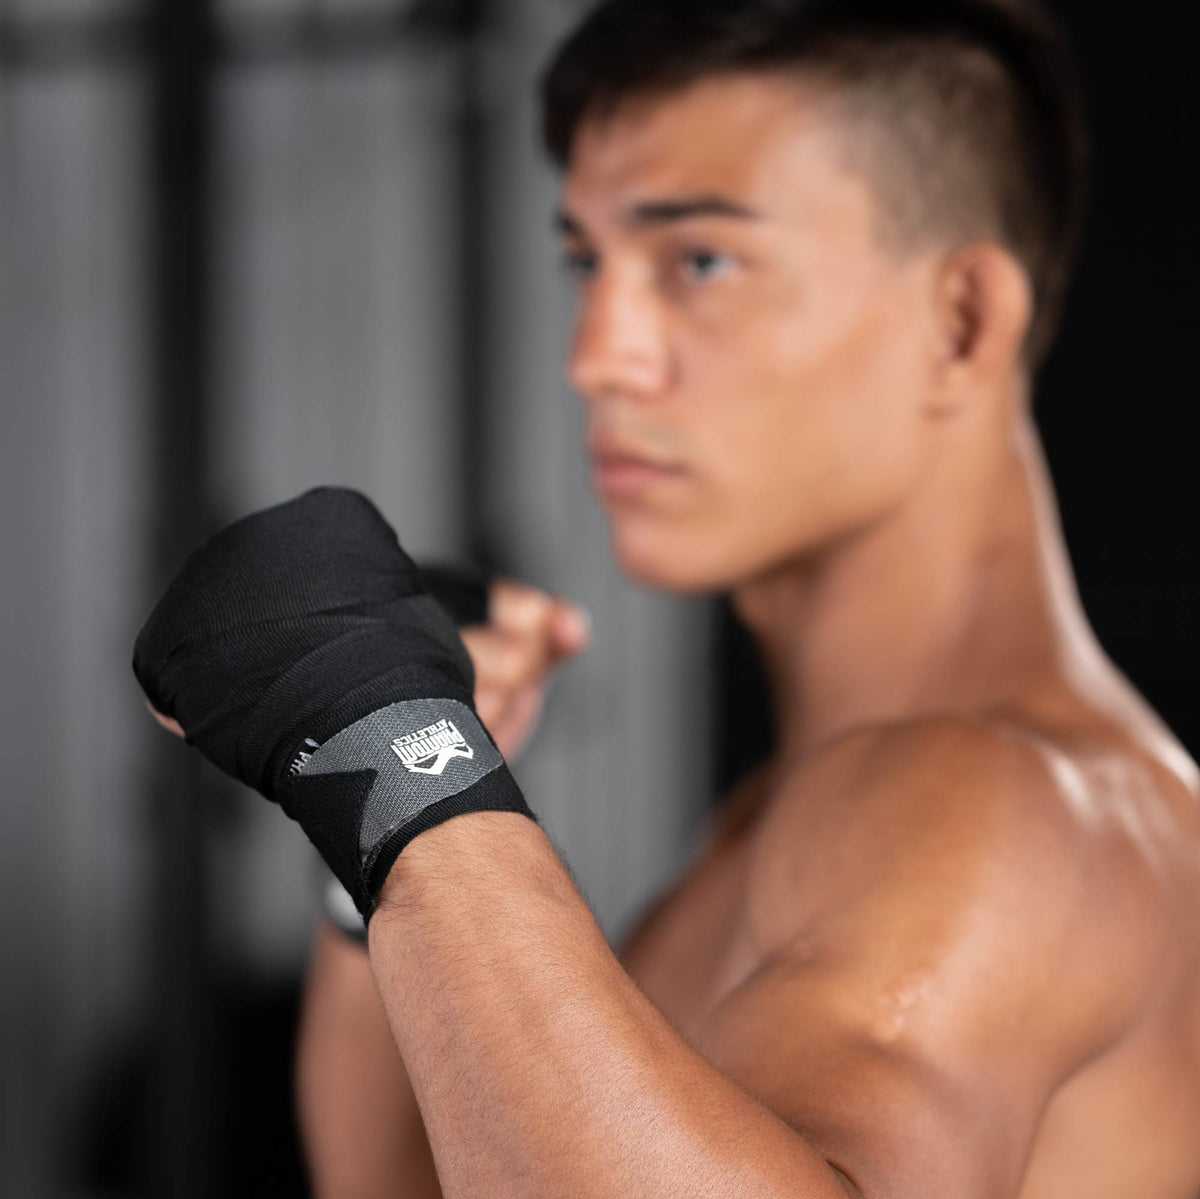 Die Phantom Impact Boxbandagen für dein Kampfsporttraining. 2 Sets Bandagen in 250 oder 400cm Länge. Ideal für MMA, Muay Thai oder Kickboxen. Aus halbelastischem Material mit hochwertigem Logo und Klettverschluss.